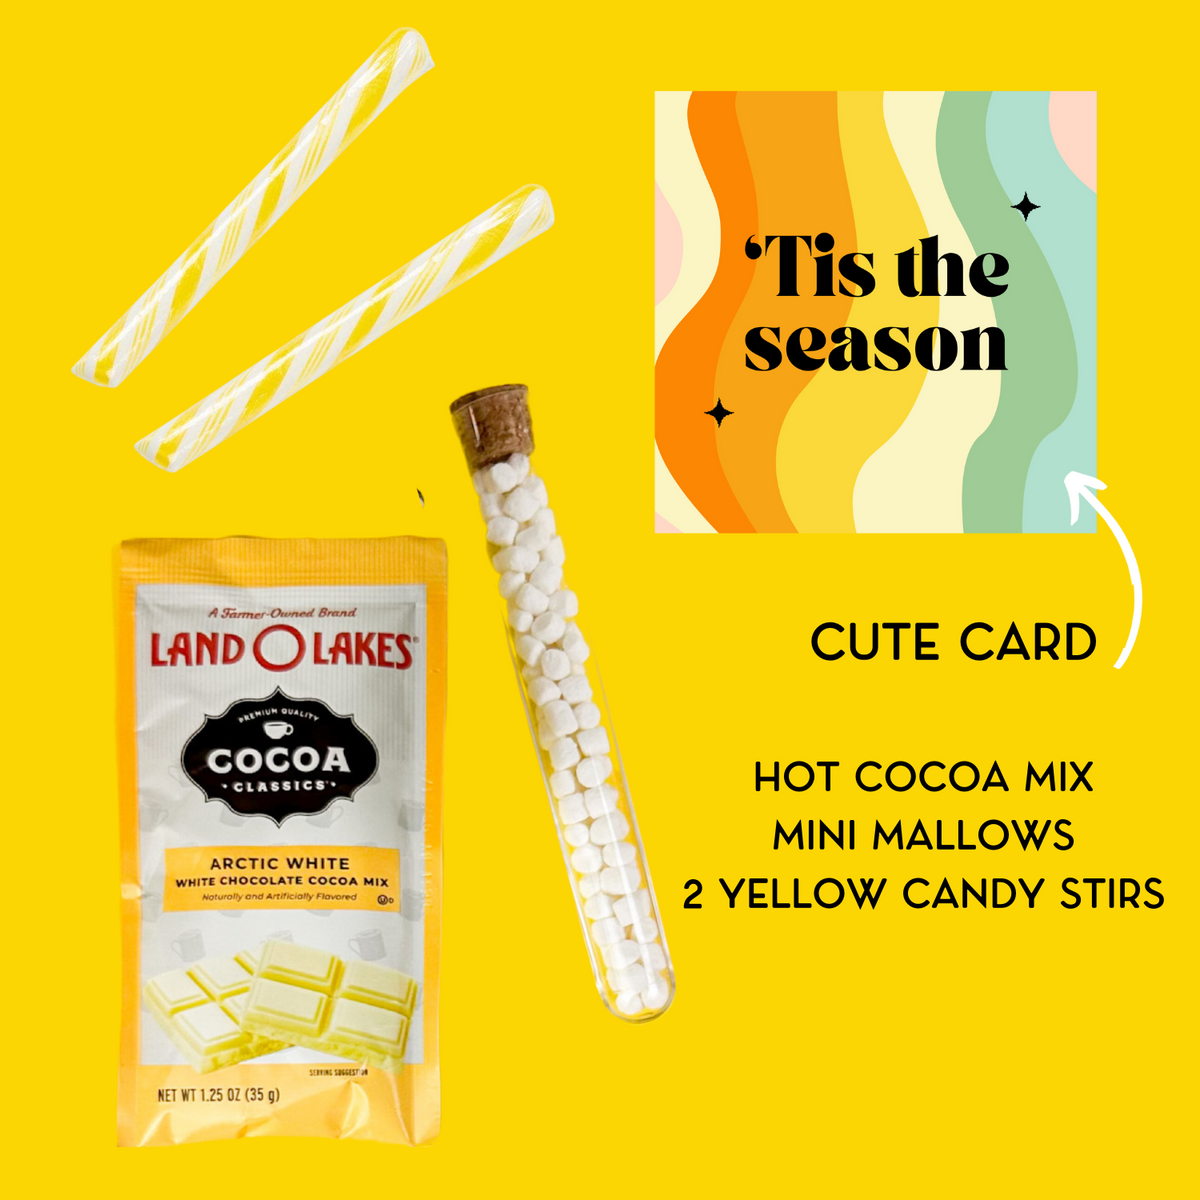 Hot Cocoa Kit